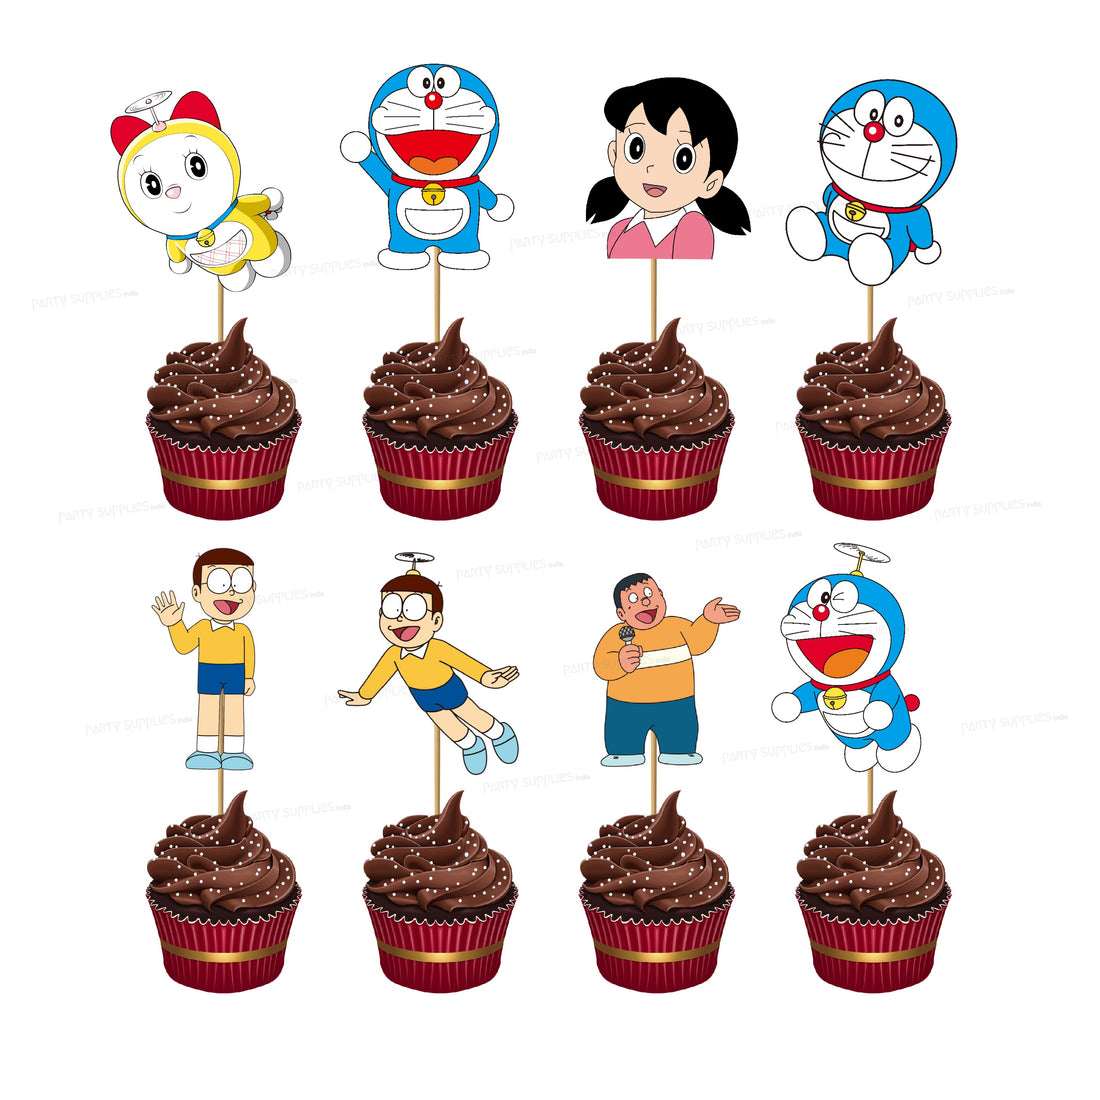 PSI Doraemon Theme Classic Cup Cake Topper